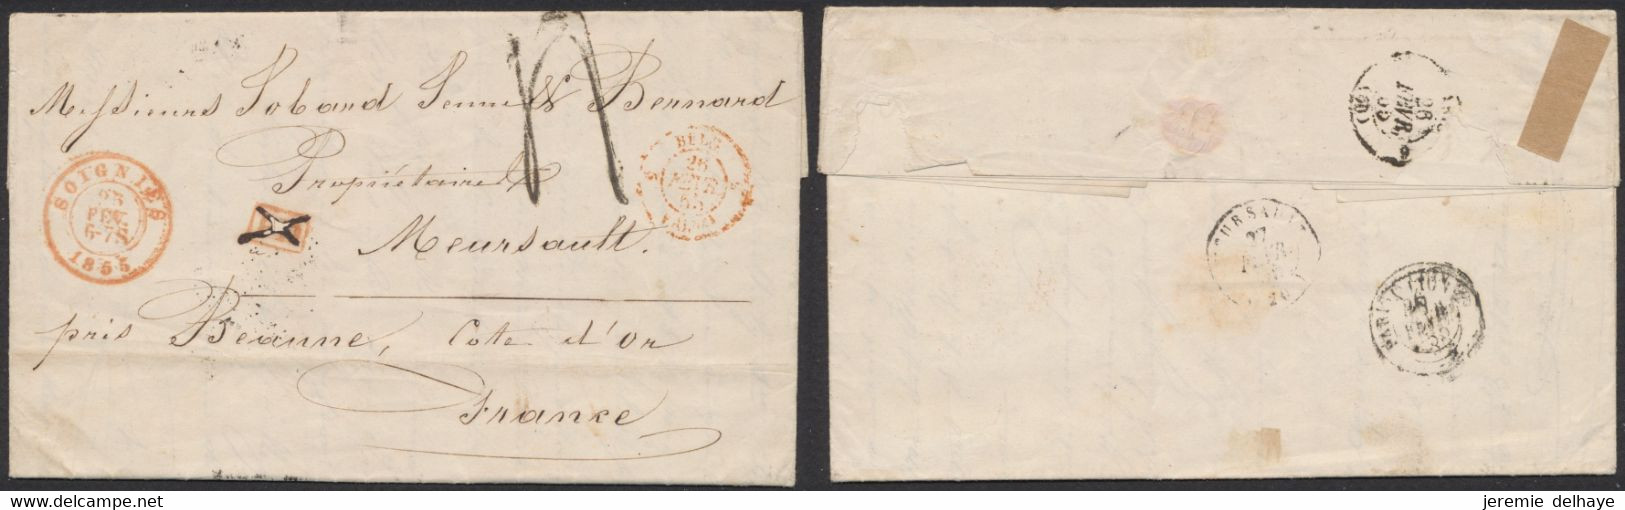 LAC Non Affranchie + Cachet Dateur "Soignies" (1855) Griffe PD Annulé à La Plume, Port 4 Décimes > Meursault (France) - Correo Rural